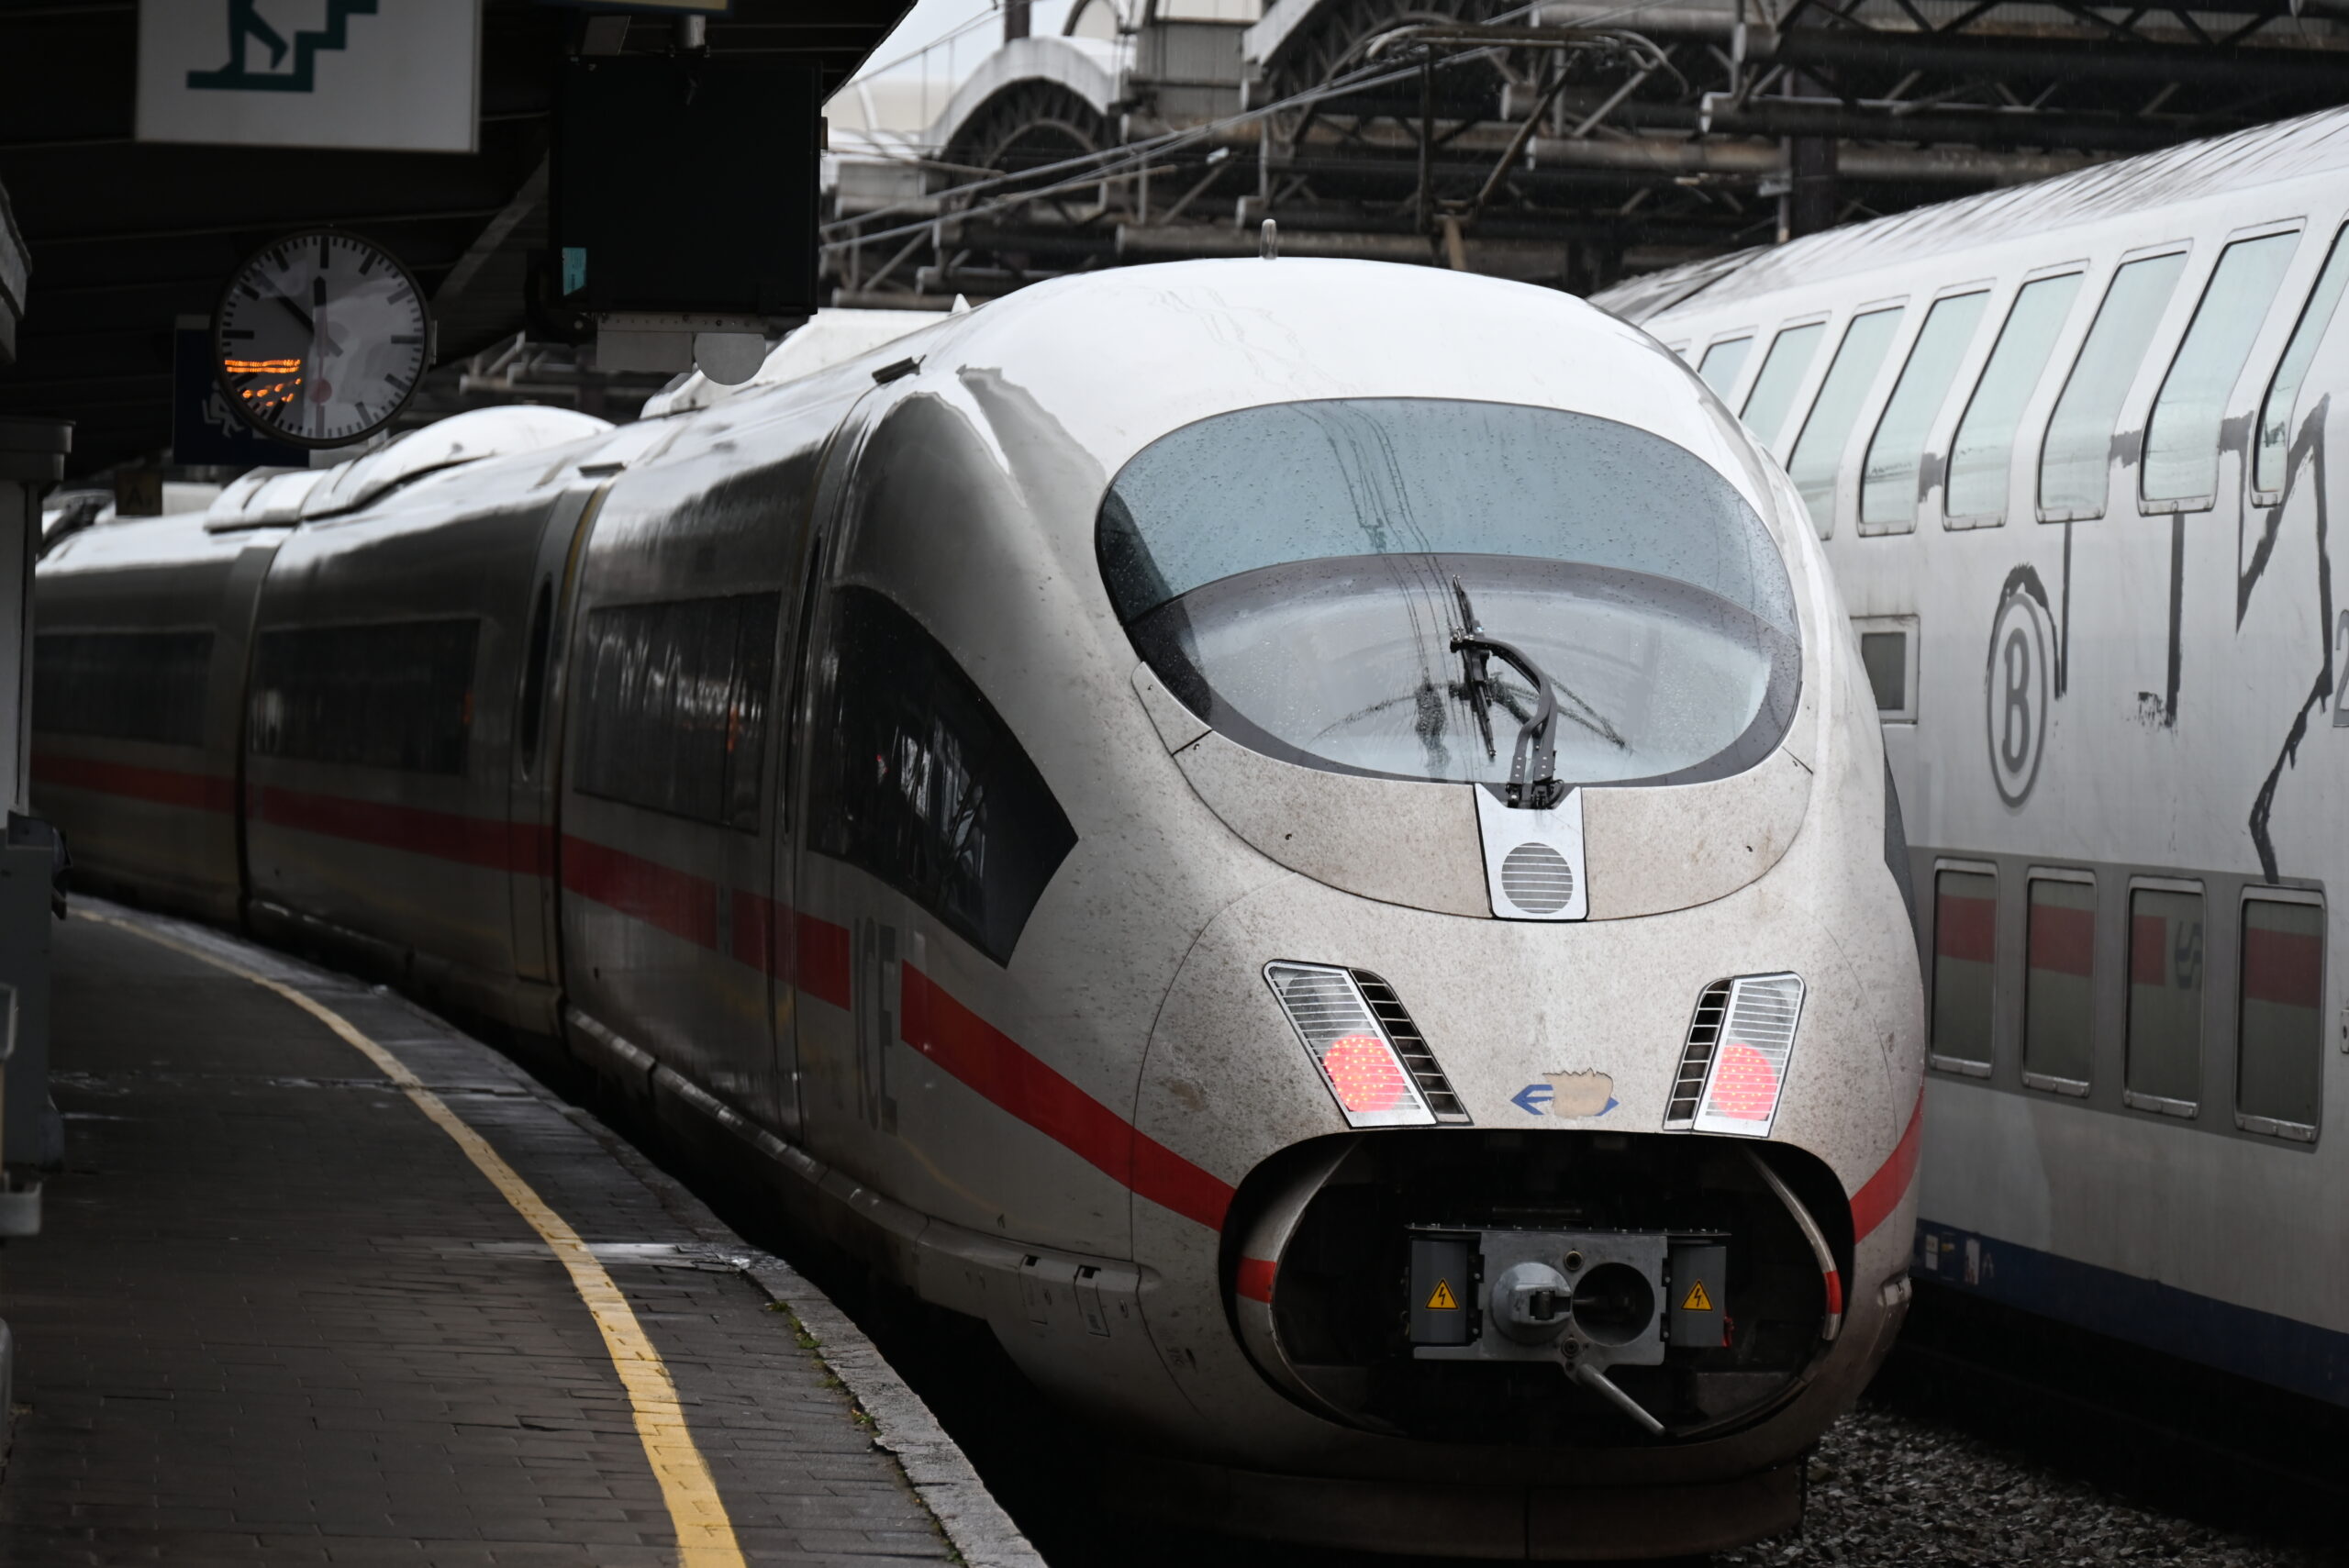 ブリュッセルのミディ駅に停車中のドイツ鉄道（DB)の高速列車（ICE）